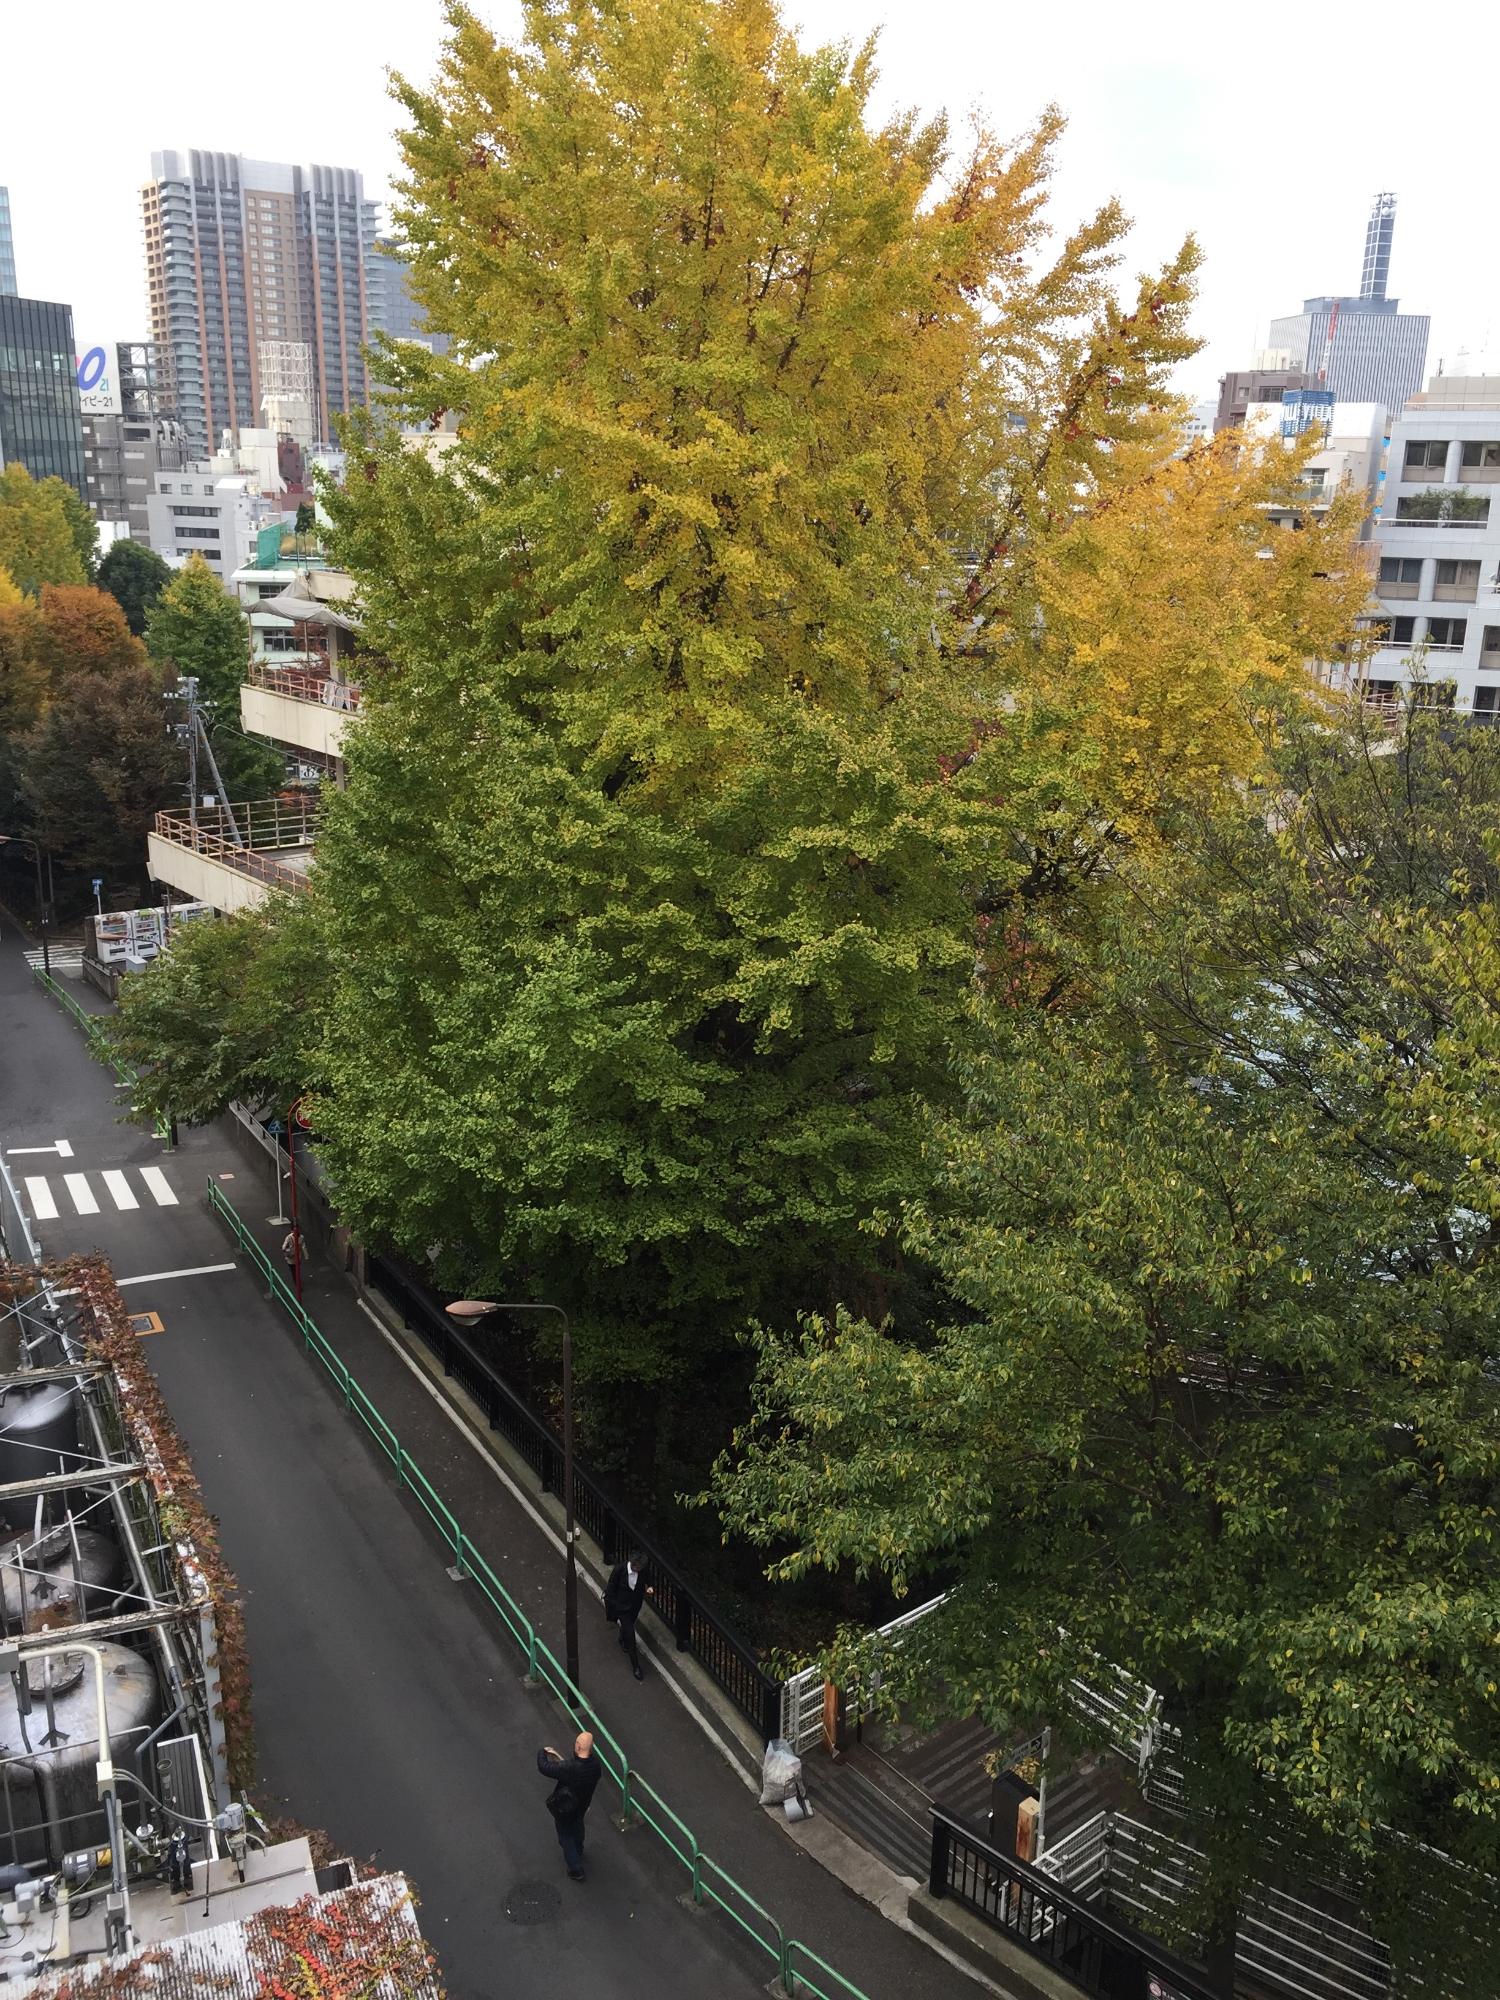 道路横に巨木に囲まれた緑が広がっている様子を上から写した写真